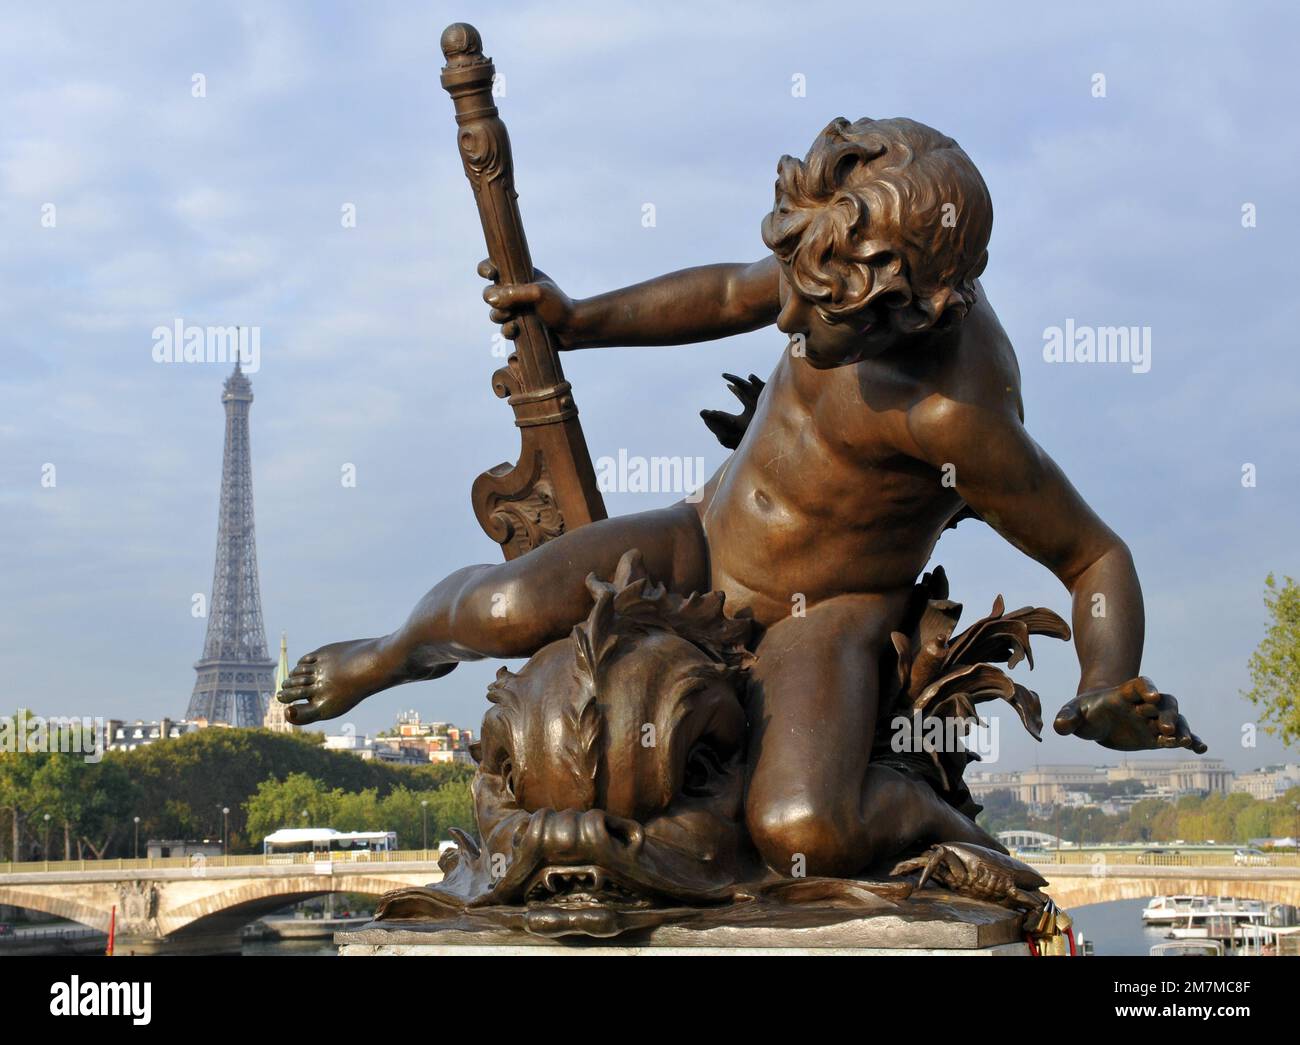 Der Eiffelturm steht hinter einer Bronzeskulptur auf der Pont Alexandre III Brücke in Paris, die 1900 fertiggestellt wurde. Stockfoto